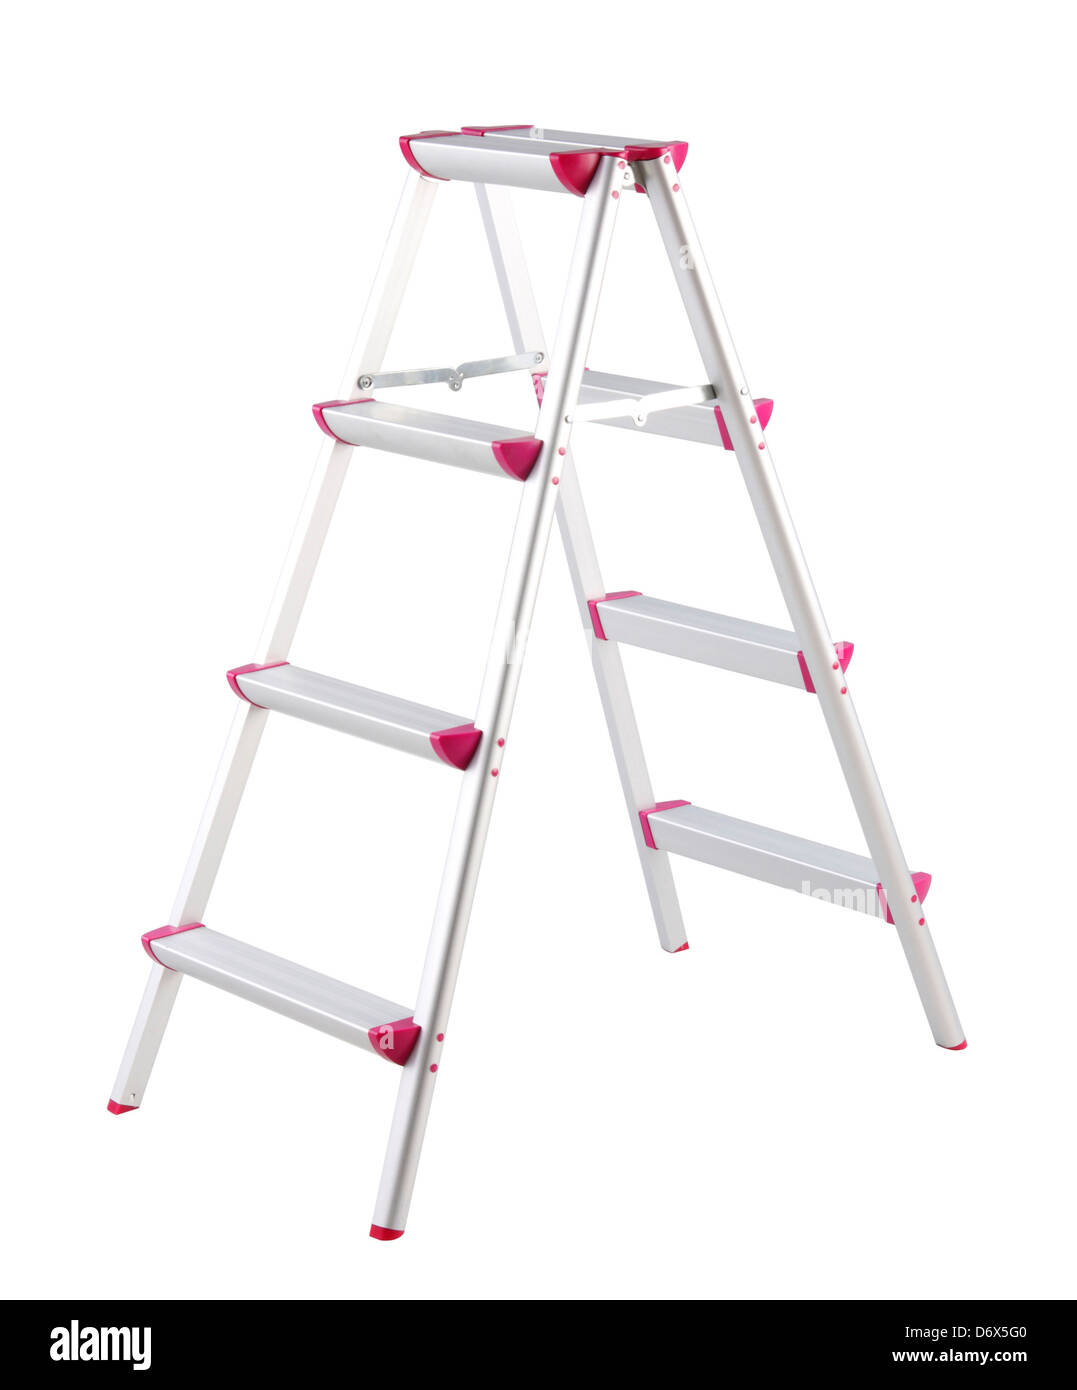 Aluminum ladder step isolated on white background Stock Photo